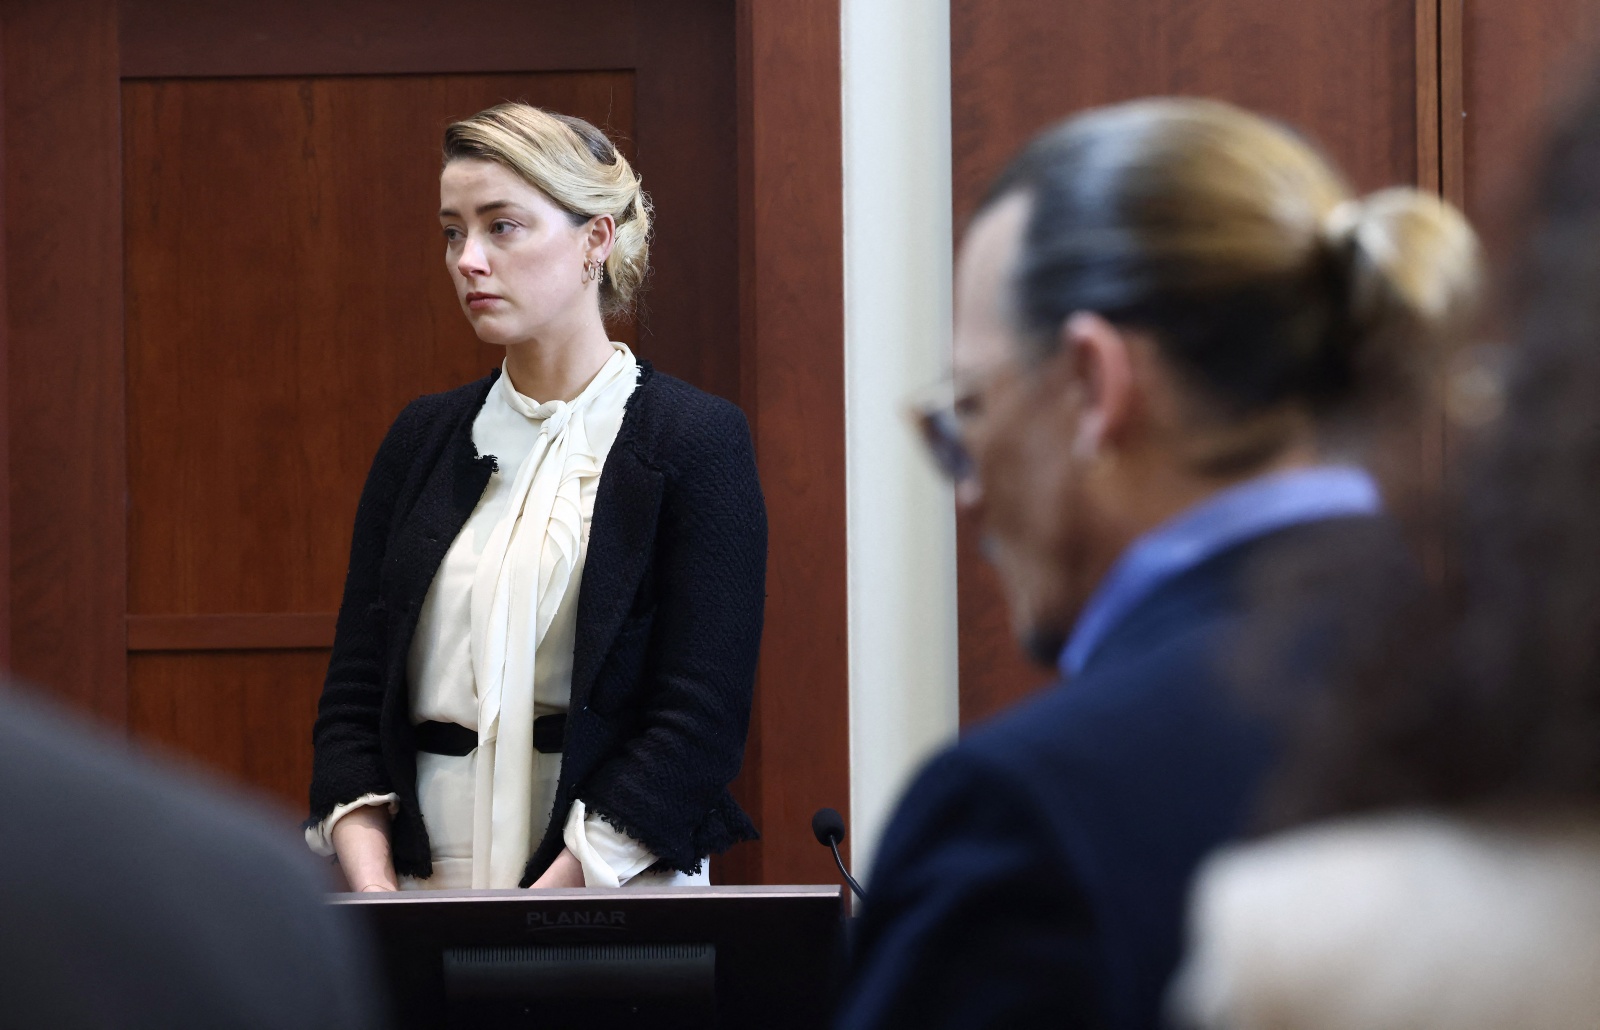 Caras  Advogados de Amber Heard querem repetição de julgamento contra Johnny  Depp